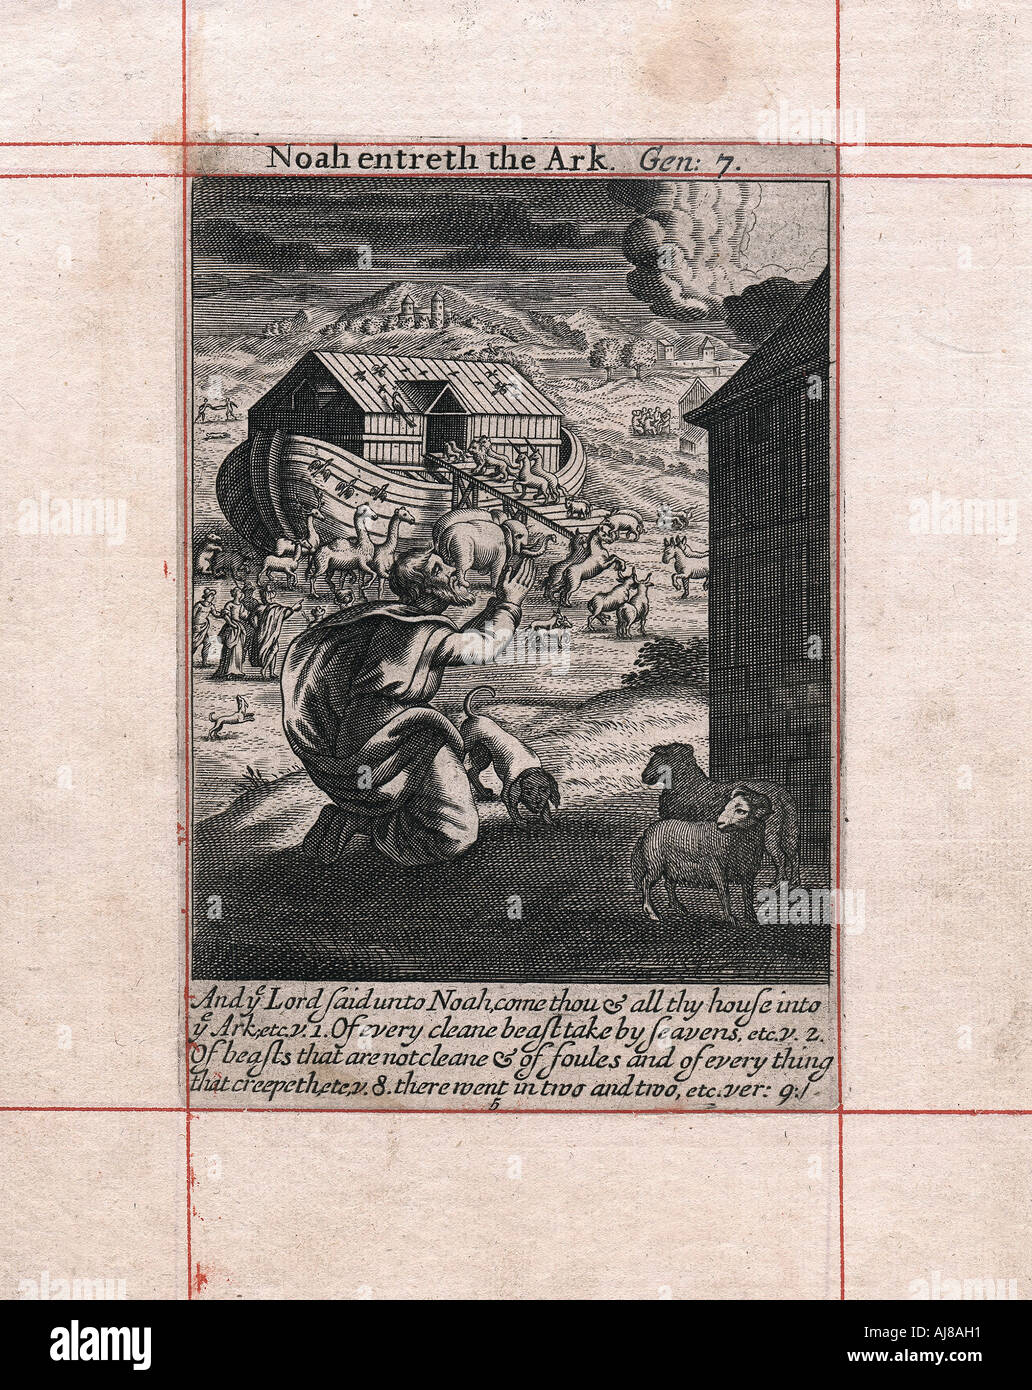 Noah's Ark - los animales van de dos en dos, de 1716. Artista: Desconocido Foto de stock